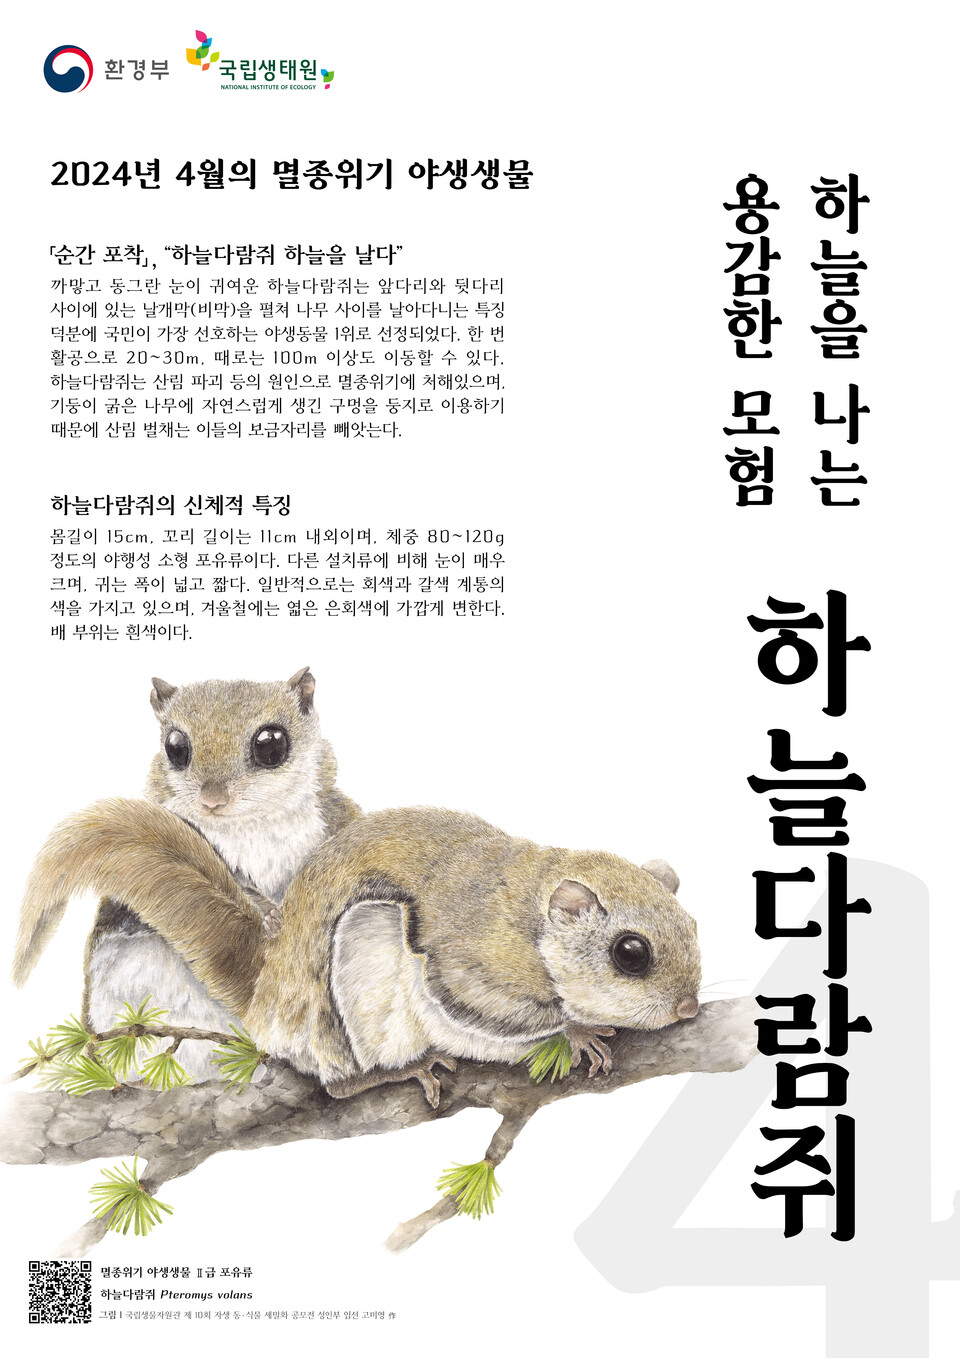 4월의 멸종위기 야생생물 하늘다람쥐 포스터. (사진 환경부)/뉴스펭귄